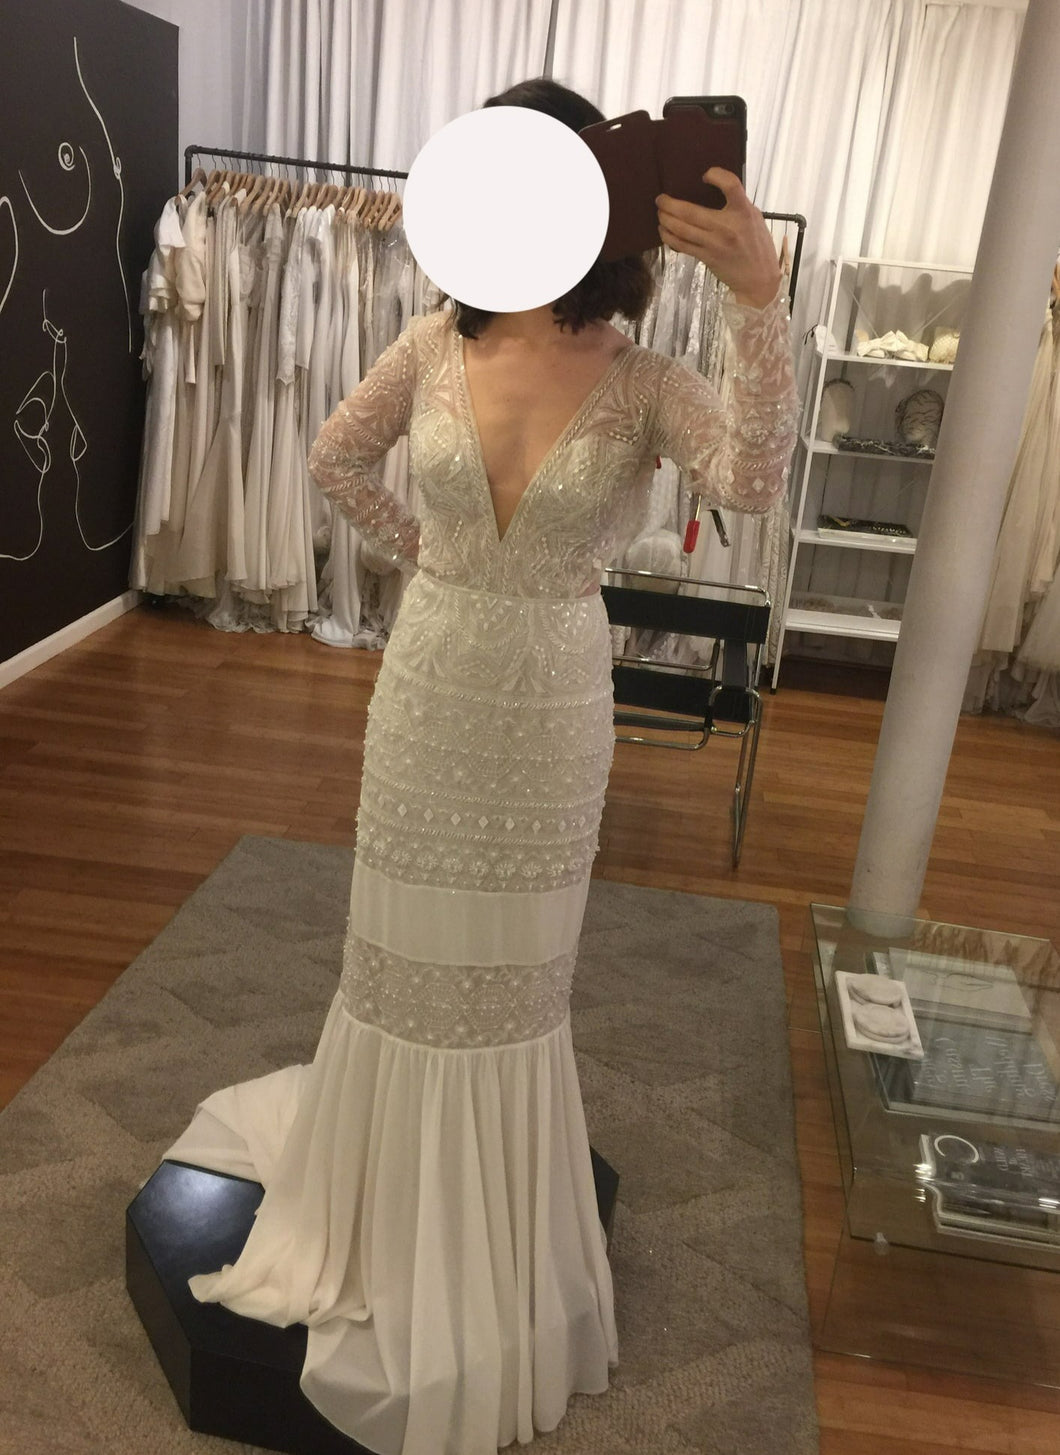 Limor Rosen 'Spencer' wedding dress size-04 NEW